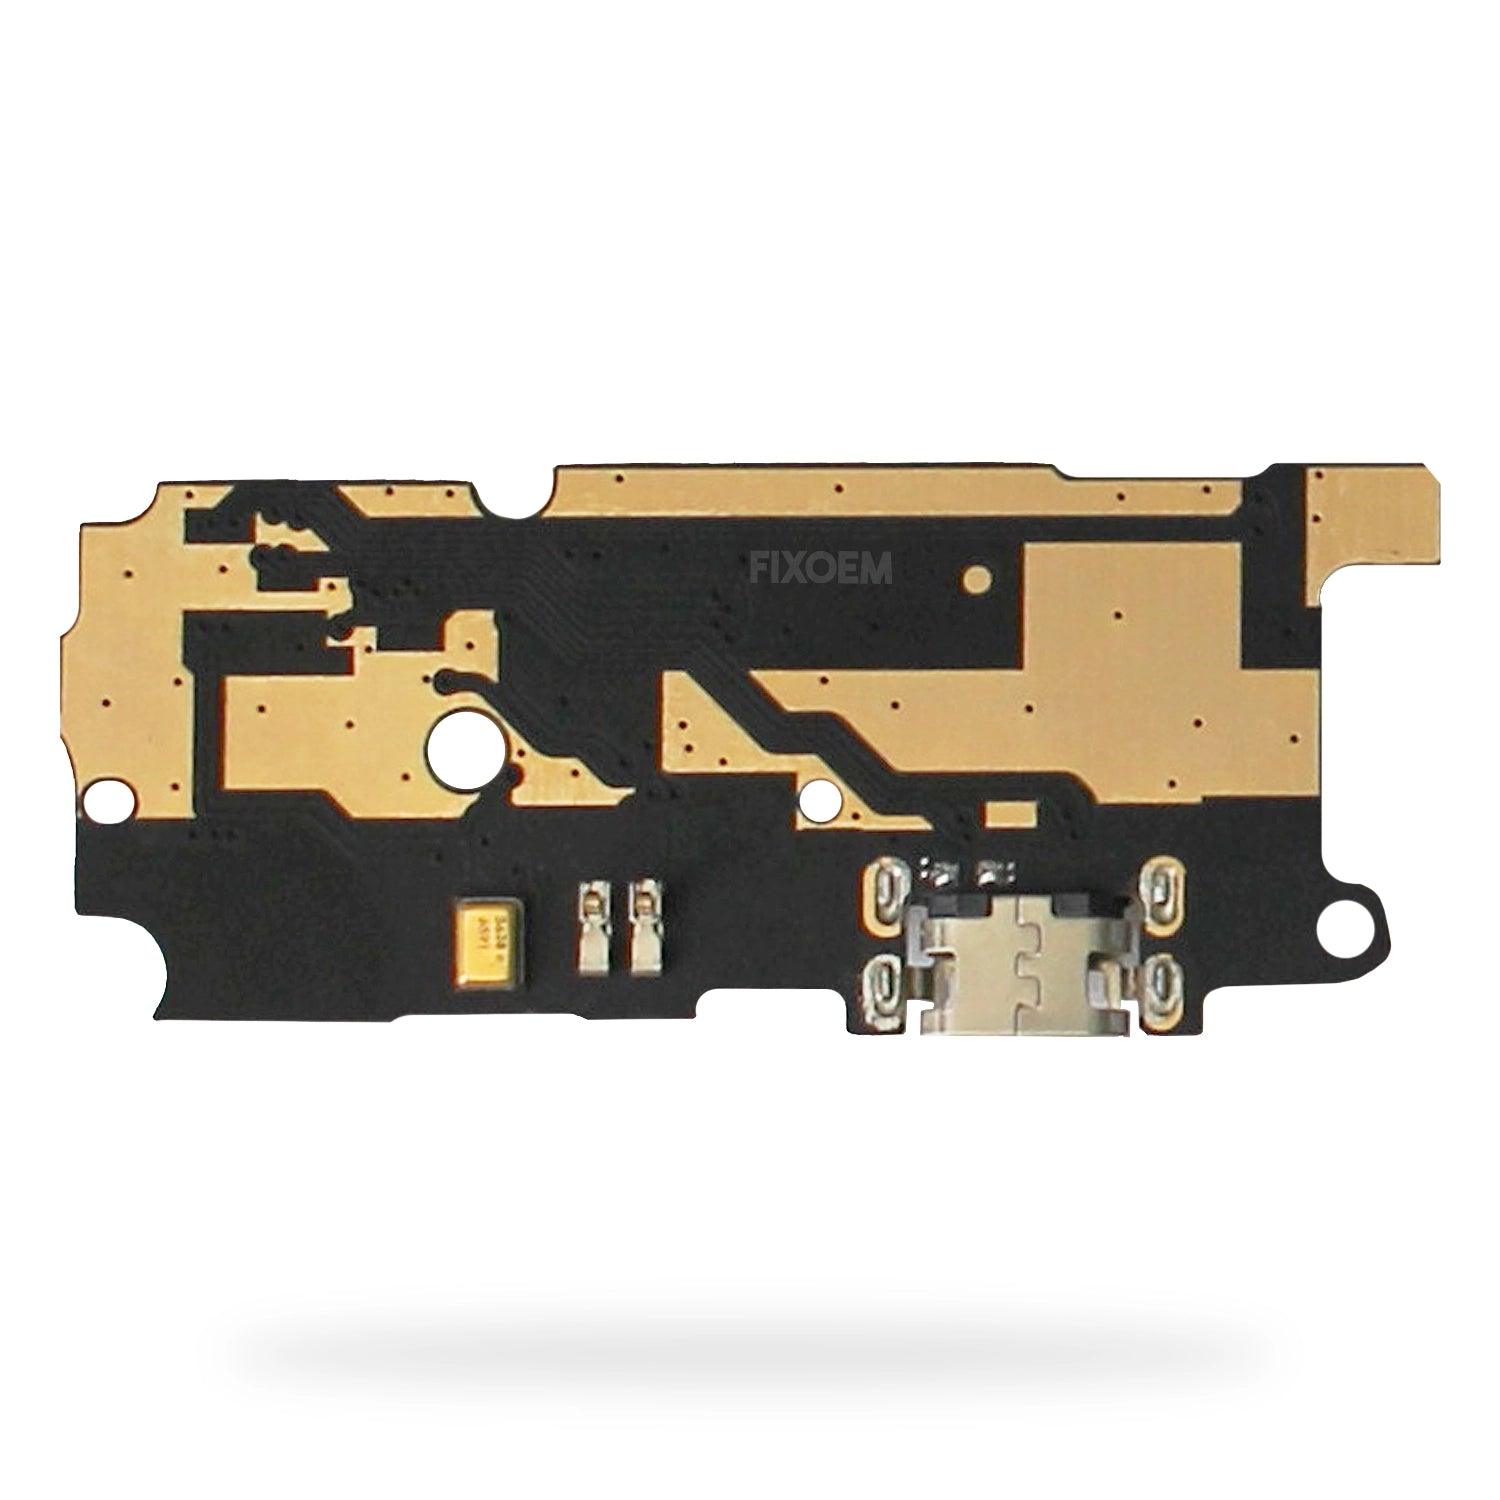 Centro Carga Xiaomi Redmi Note 4 Msm8953 a solo $ 60.00 Refaccion y puestos celulares, refurbish y microelectronica.- FixOEM